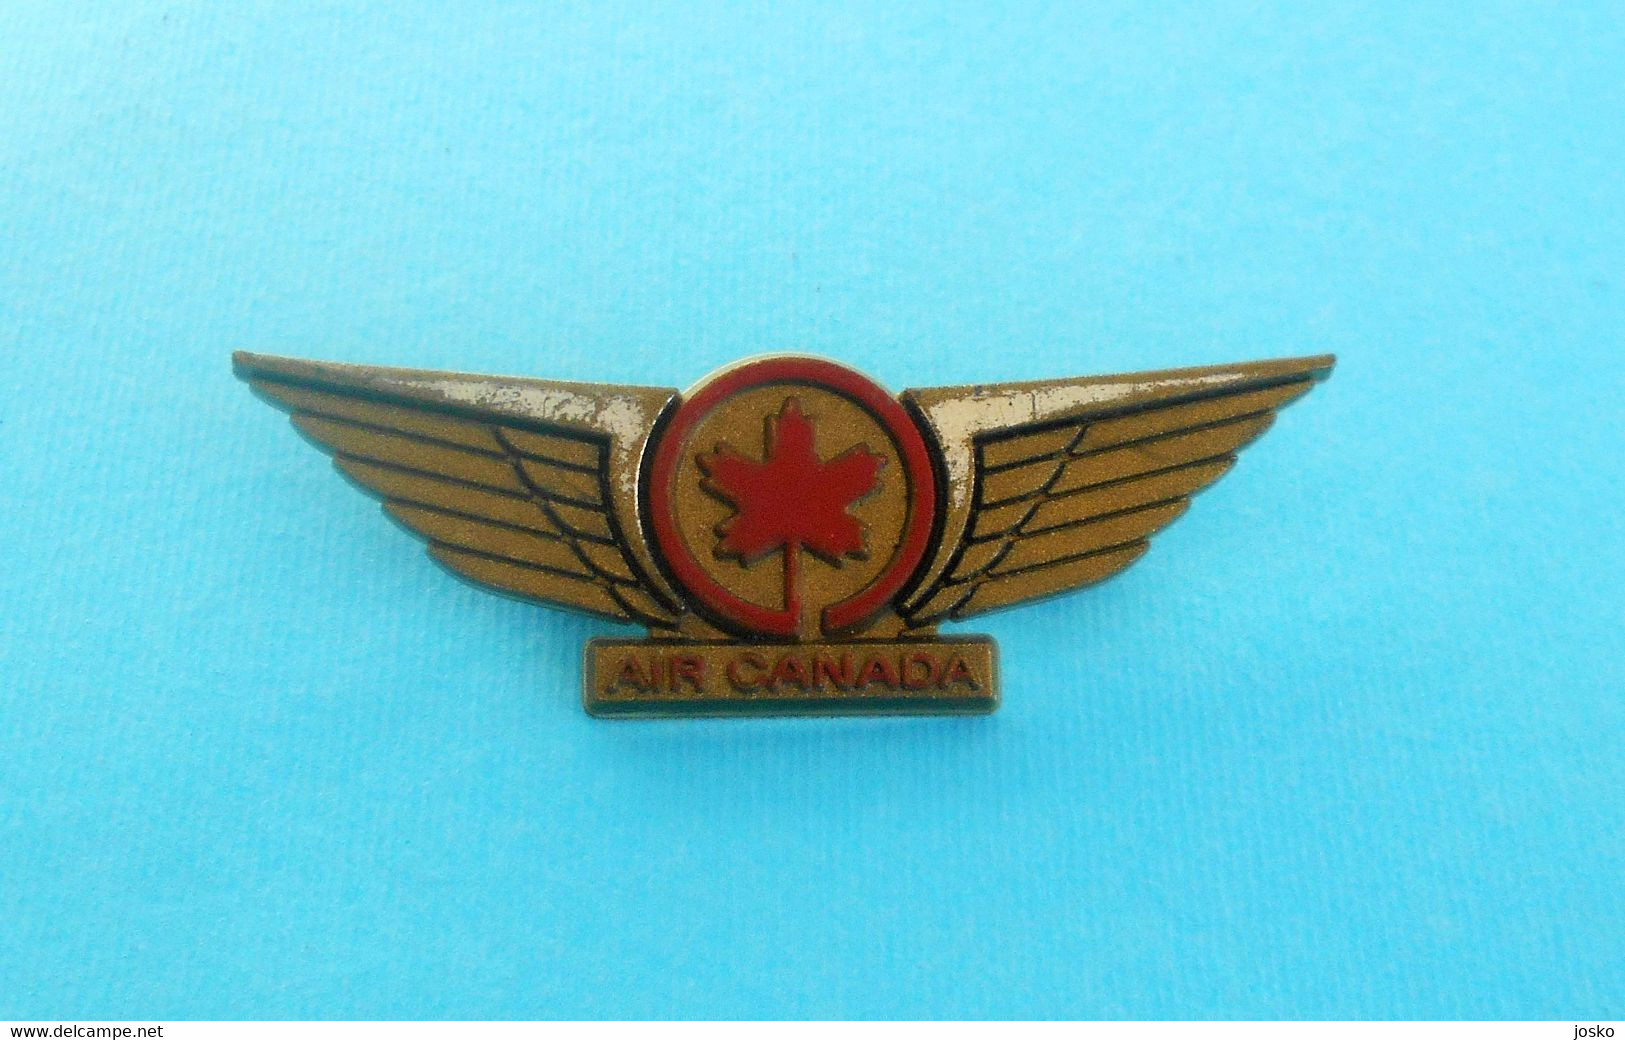 AIR CANADA ... Vintage Pilot Wings Badge * Canada National Airlines * Airways Airline Air Company Pilote Plane Avion - Tarjetas De Identificación De La Tripulación